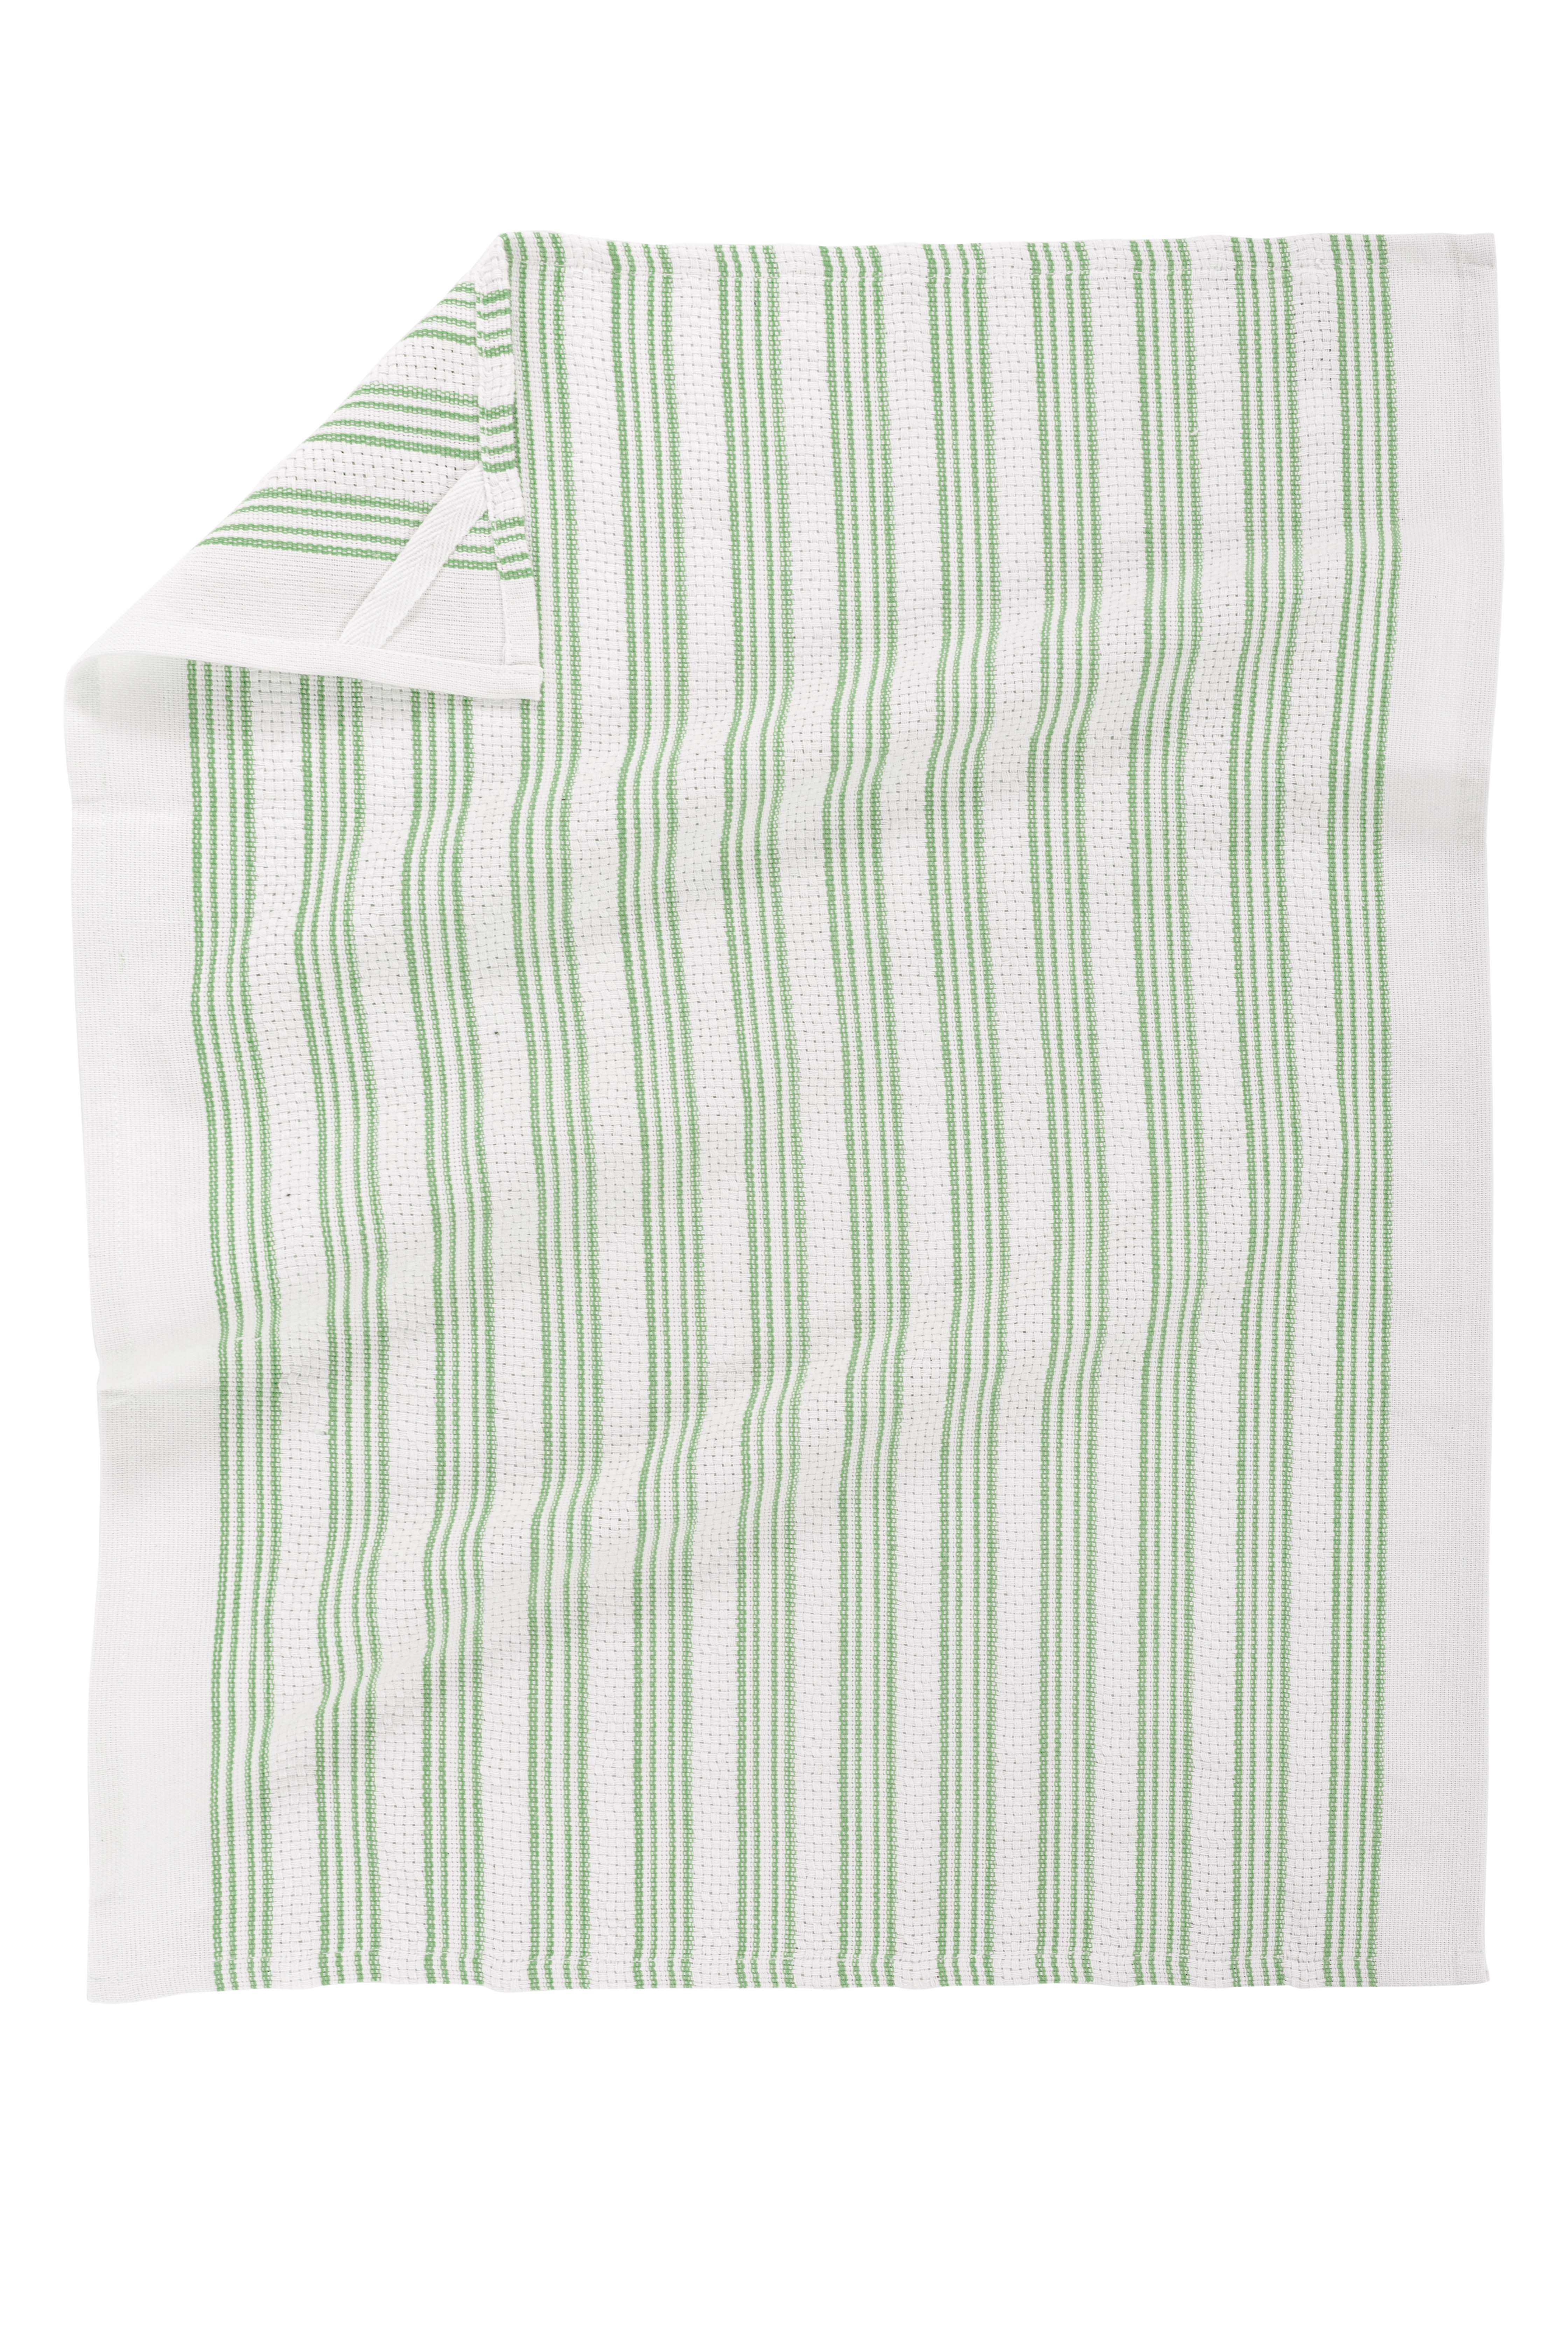 Kitchen towel BASKET WEAVE 50x70cm - set/3 - smoke green